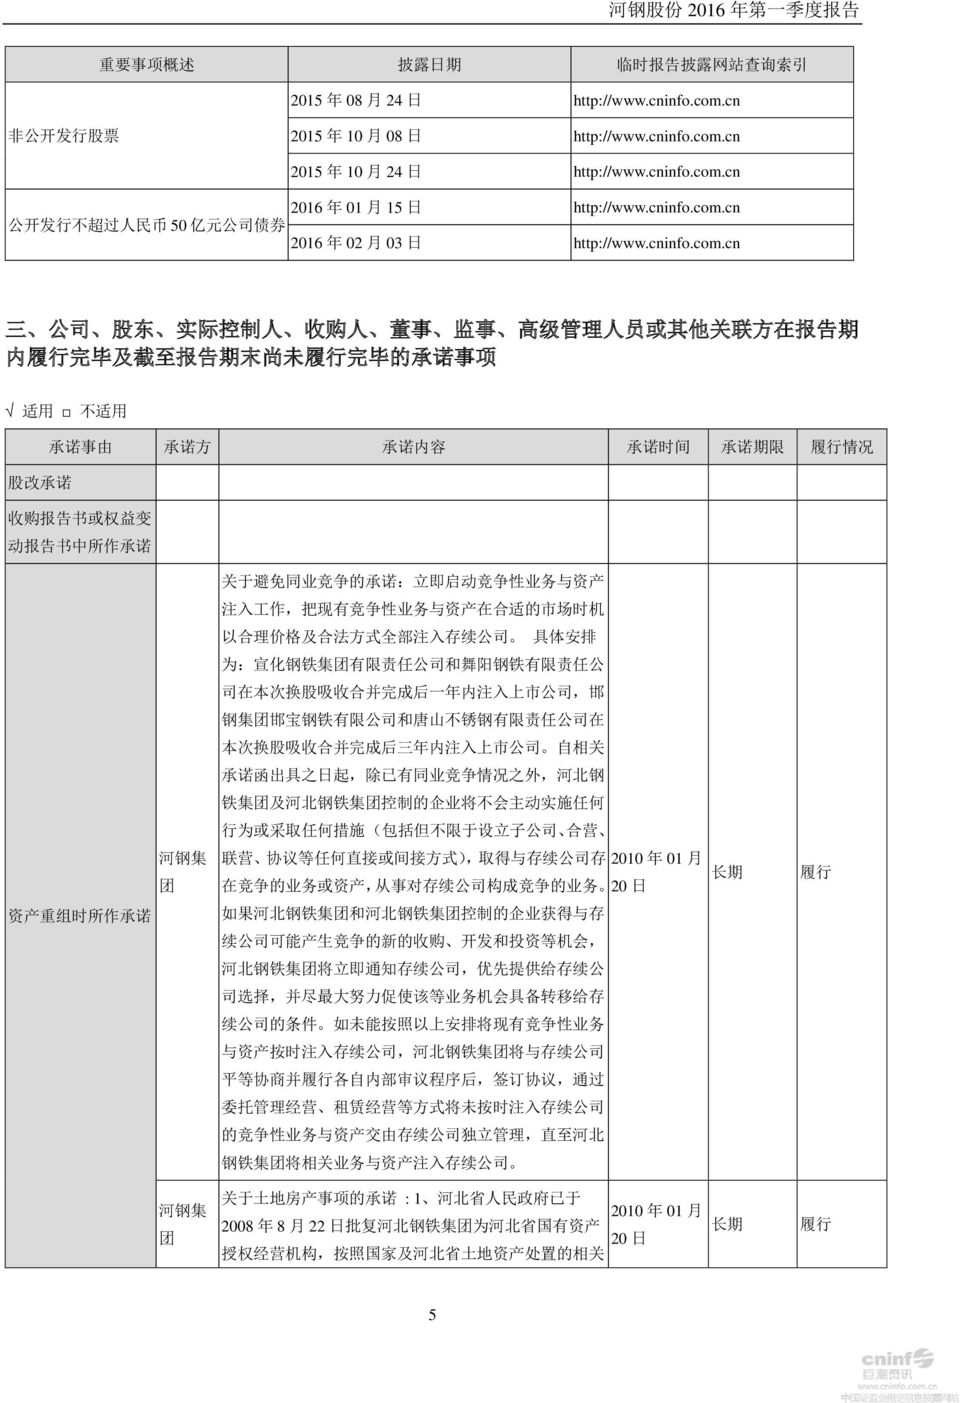 cn 公 开 发 行 不 超 过 人 民 币 50 亿 元 公 司 债 券 2016 年 02 月 03 日 http://www.